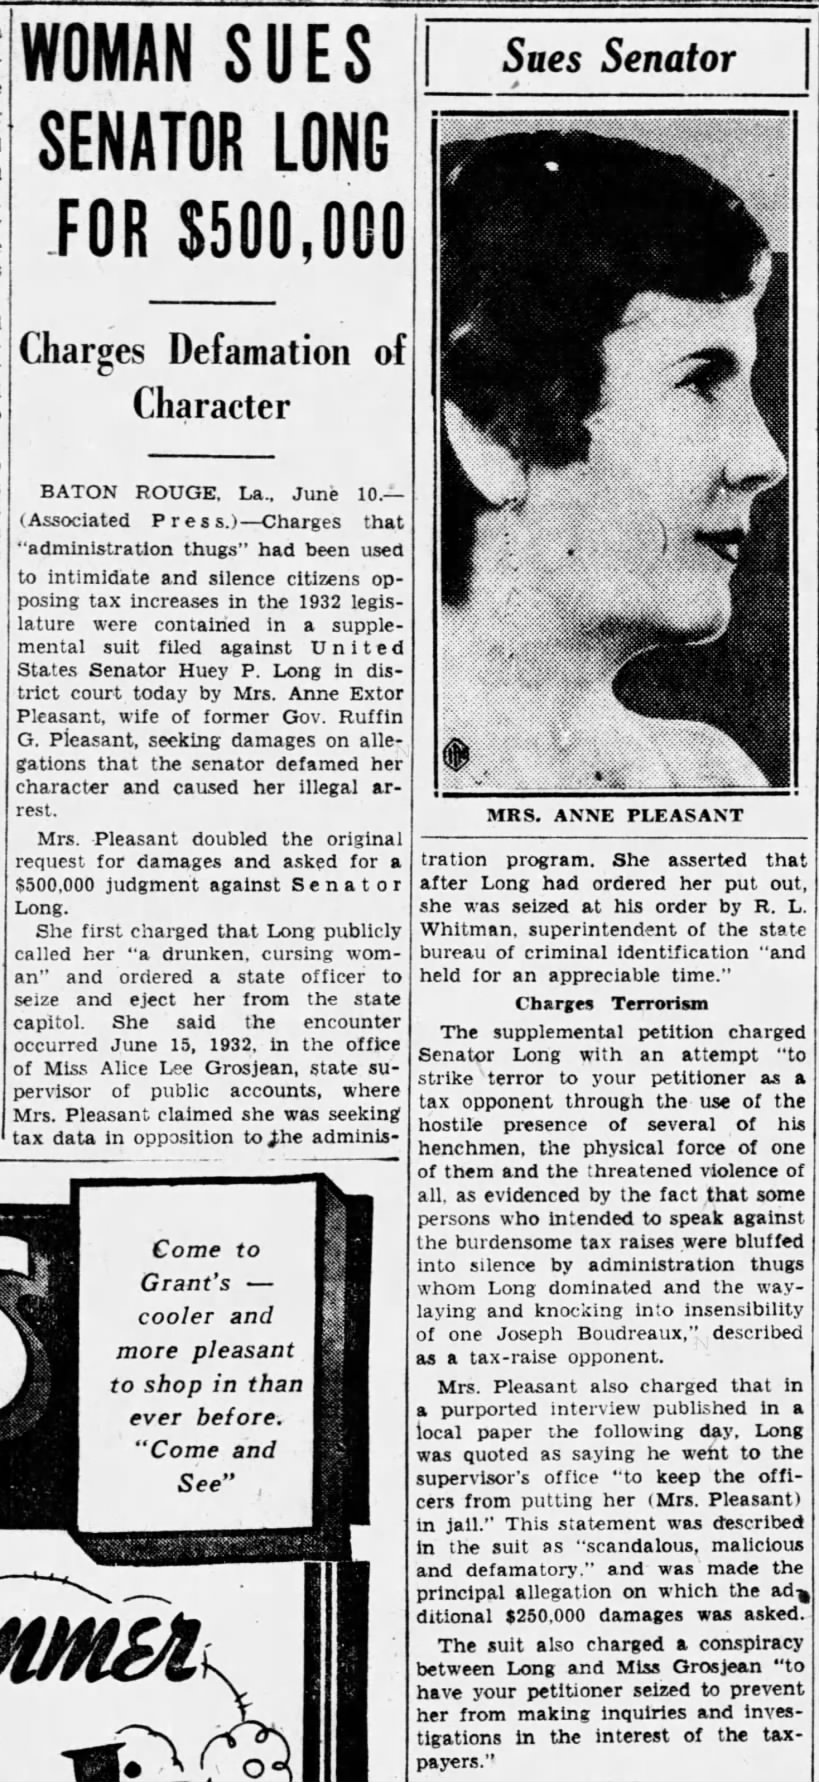 Woman Sues Senator Long for $500,000. The Tampa Tribune (Tampa, Florida) June 11, 1933, p 4